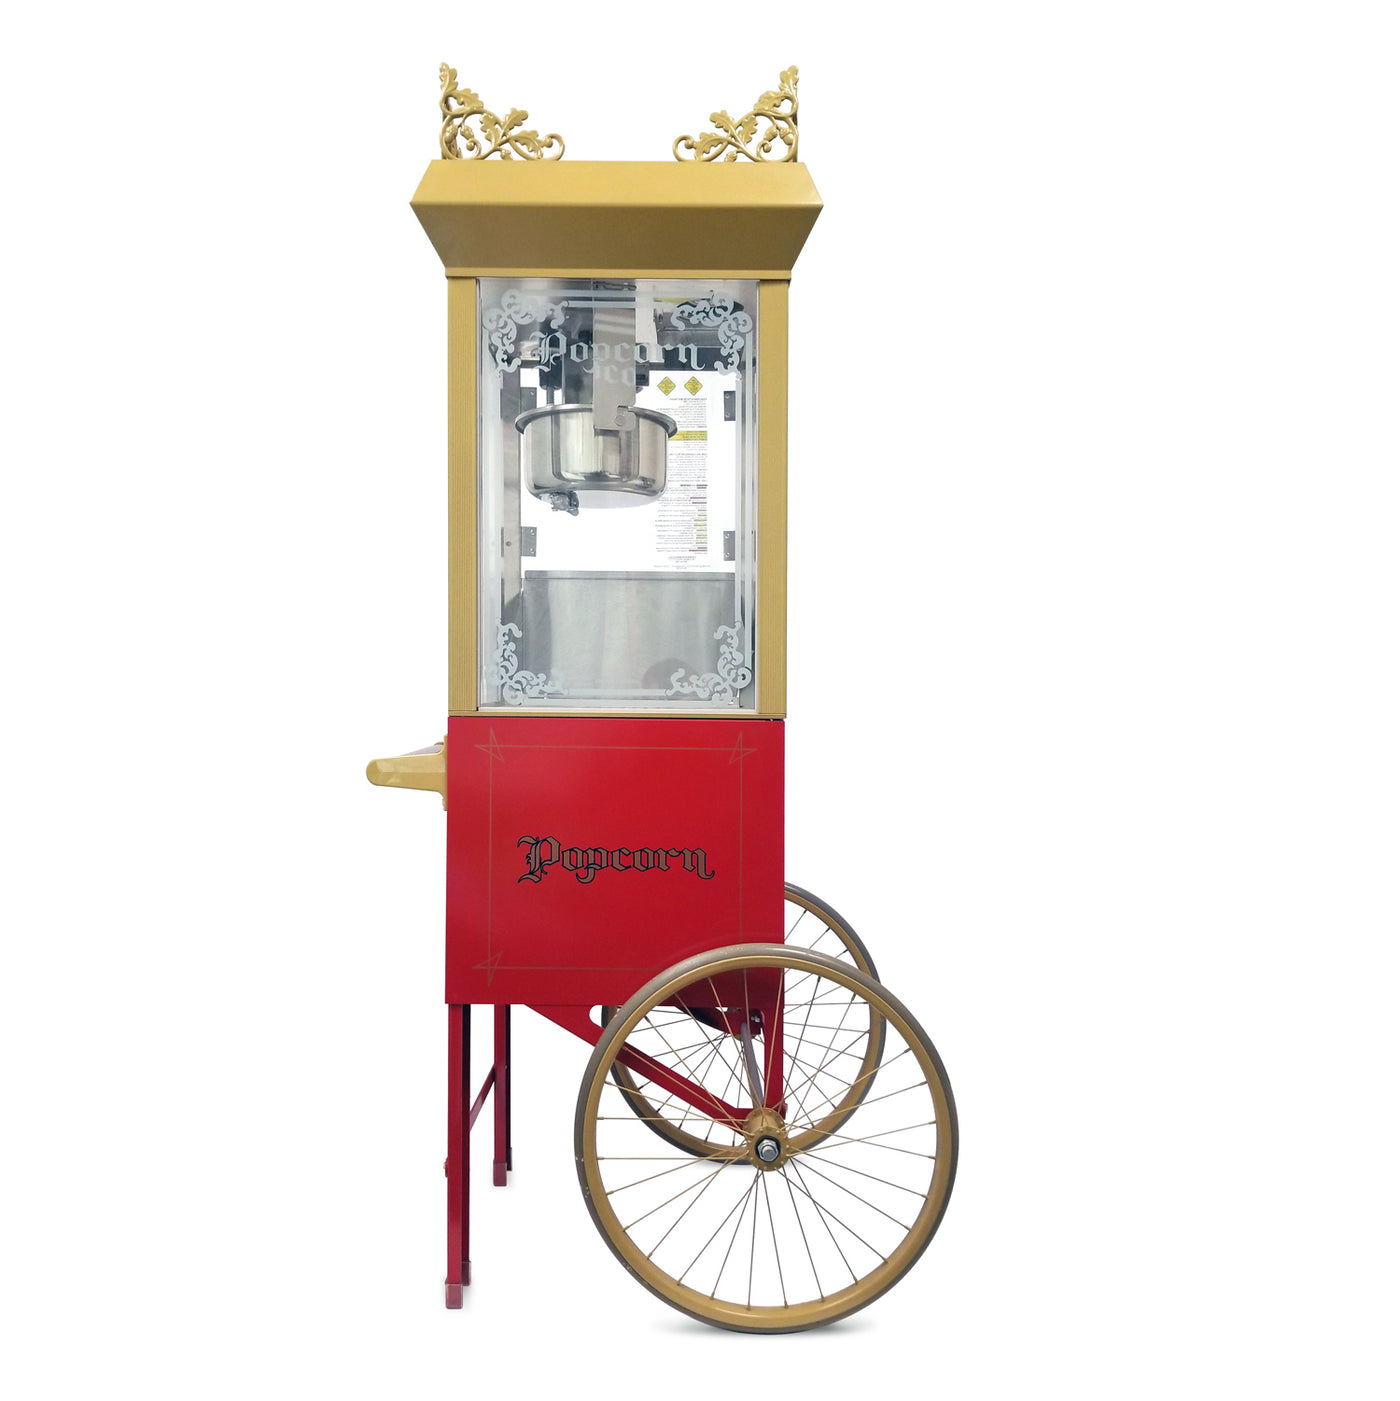 Gold Medal 2660SR Portable Popcorn Machine w/ 6 oz Kettle & Red Top, 120v